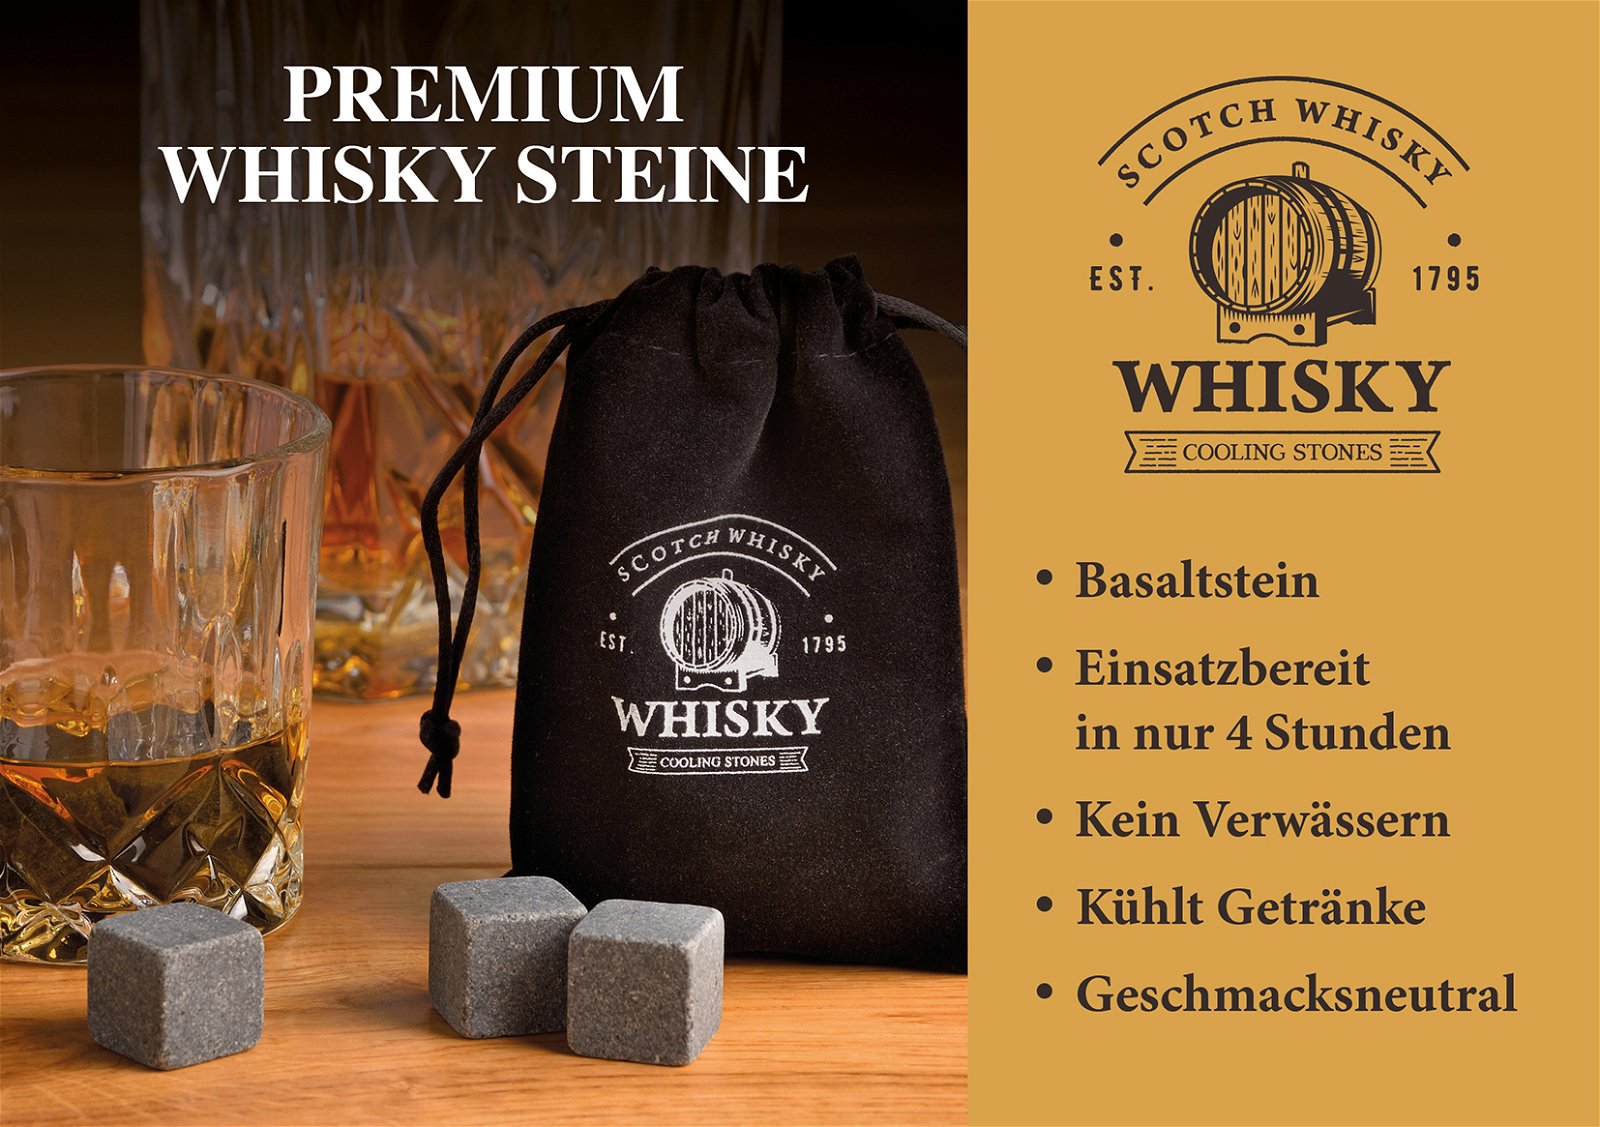 Whisky Stein Set, Glaçons en pierre de basalte 2x2x2cm, Verre 9x8x9cm, 300ml, Gris Set de 6, dans boîte en bois (L/H/P) 18x10x16,6cm